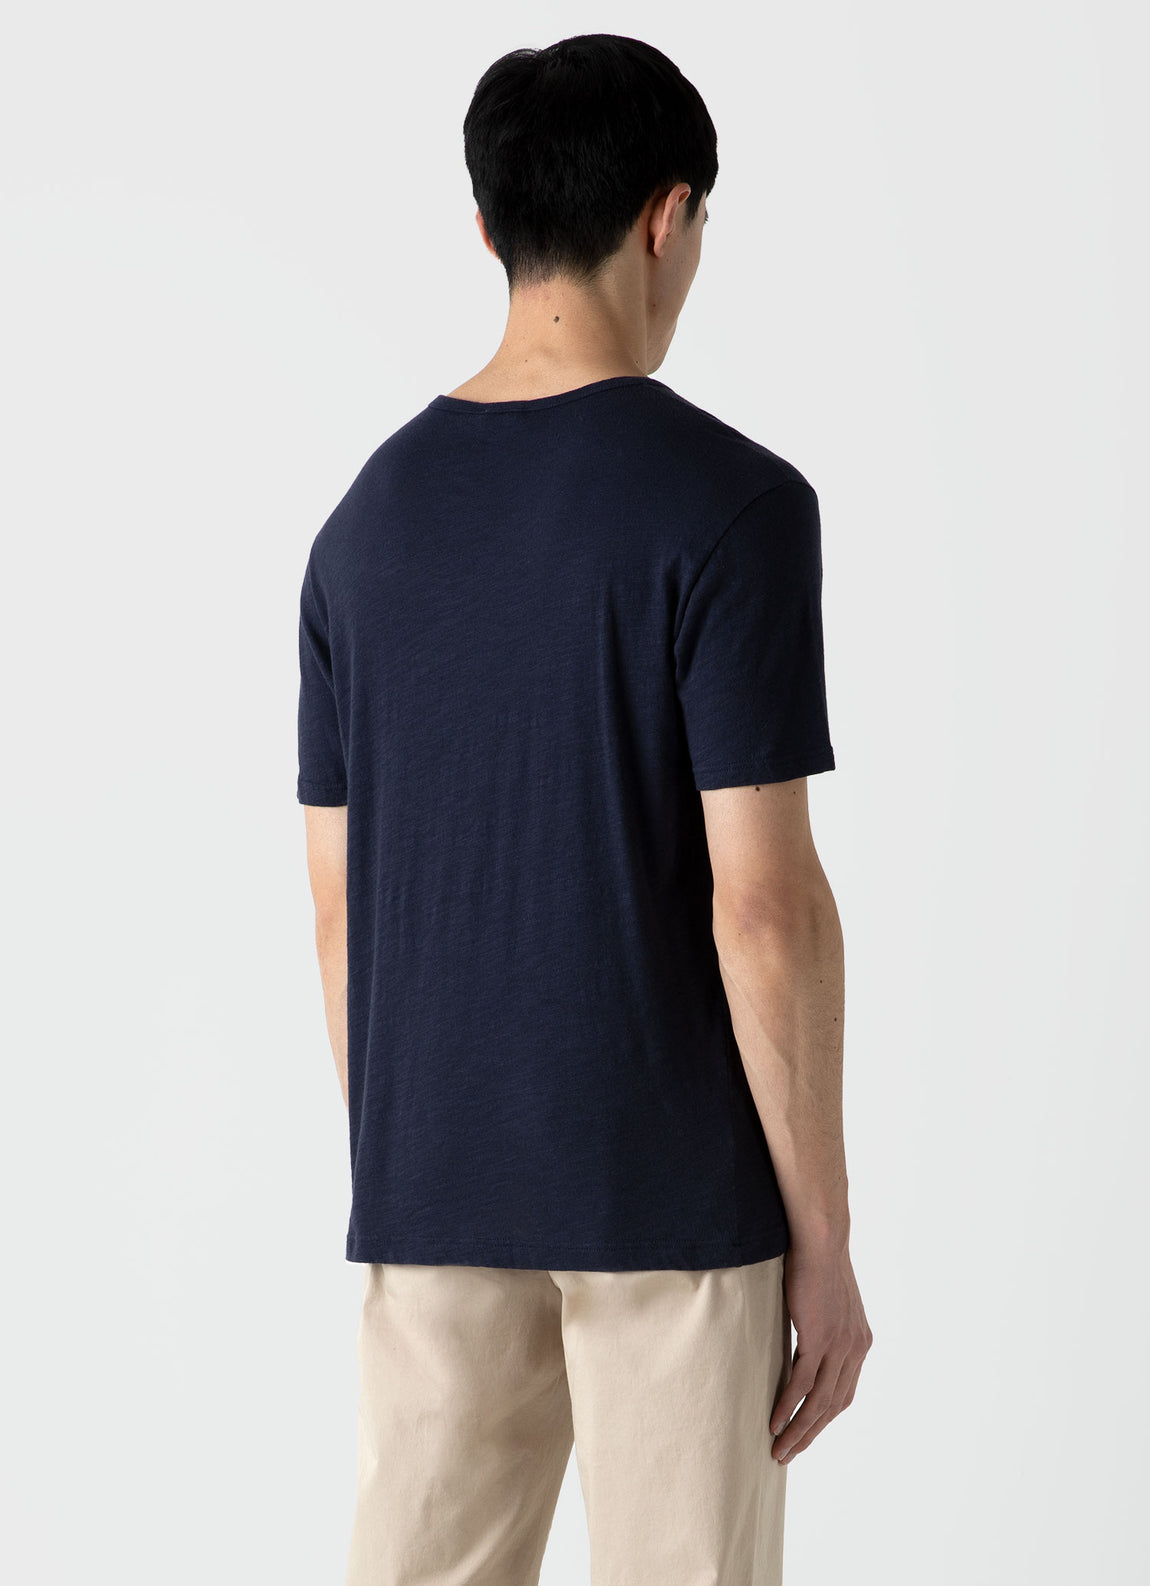 Men's Cotton Linen T-shirt in Navy | Sunspel